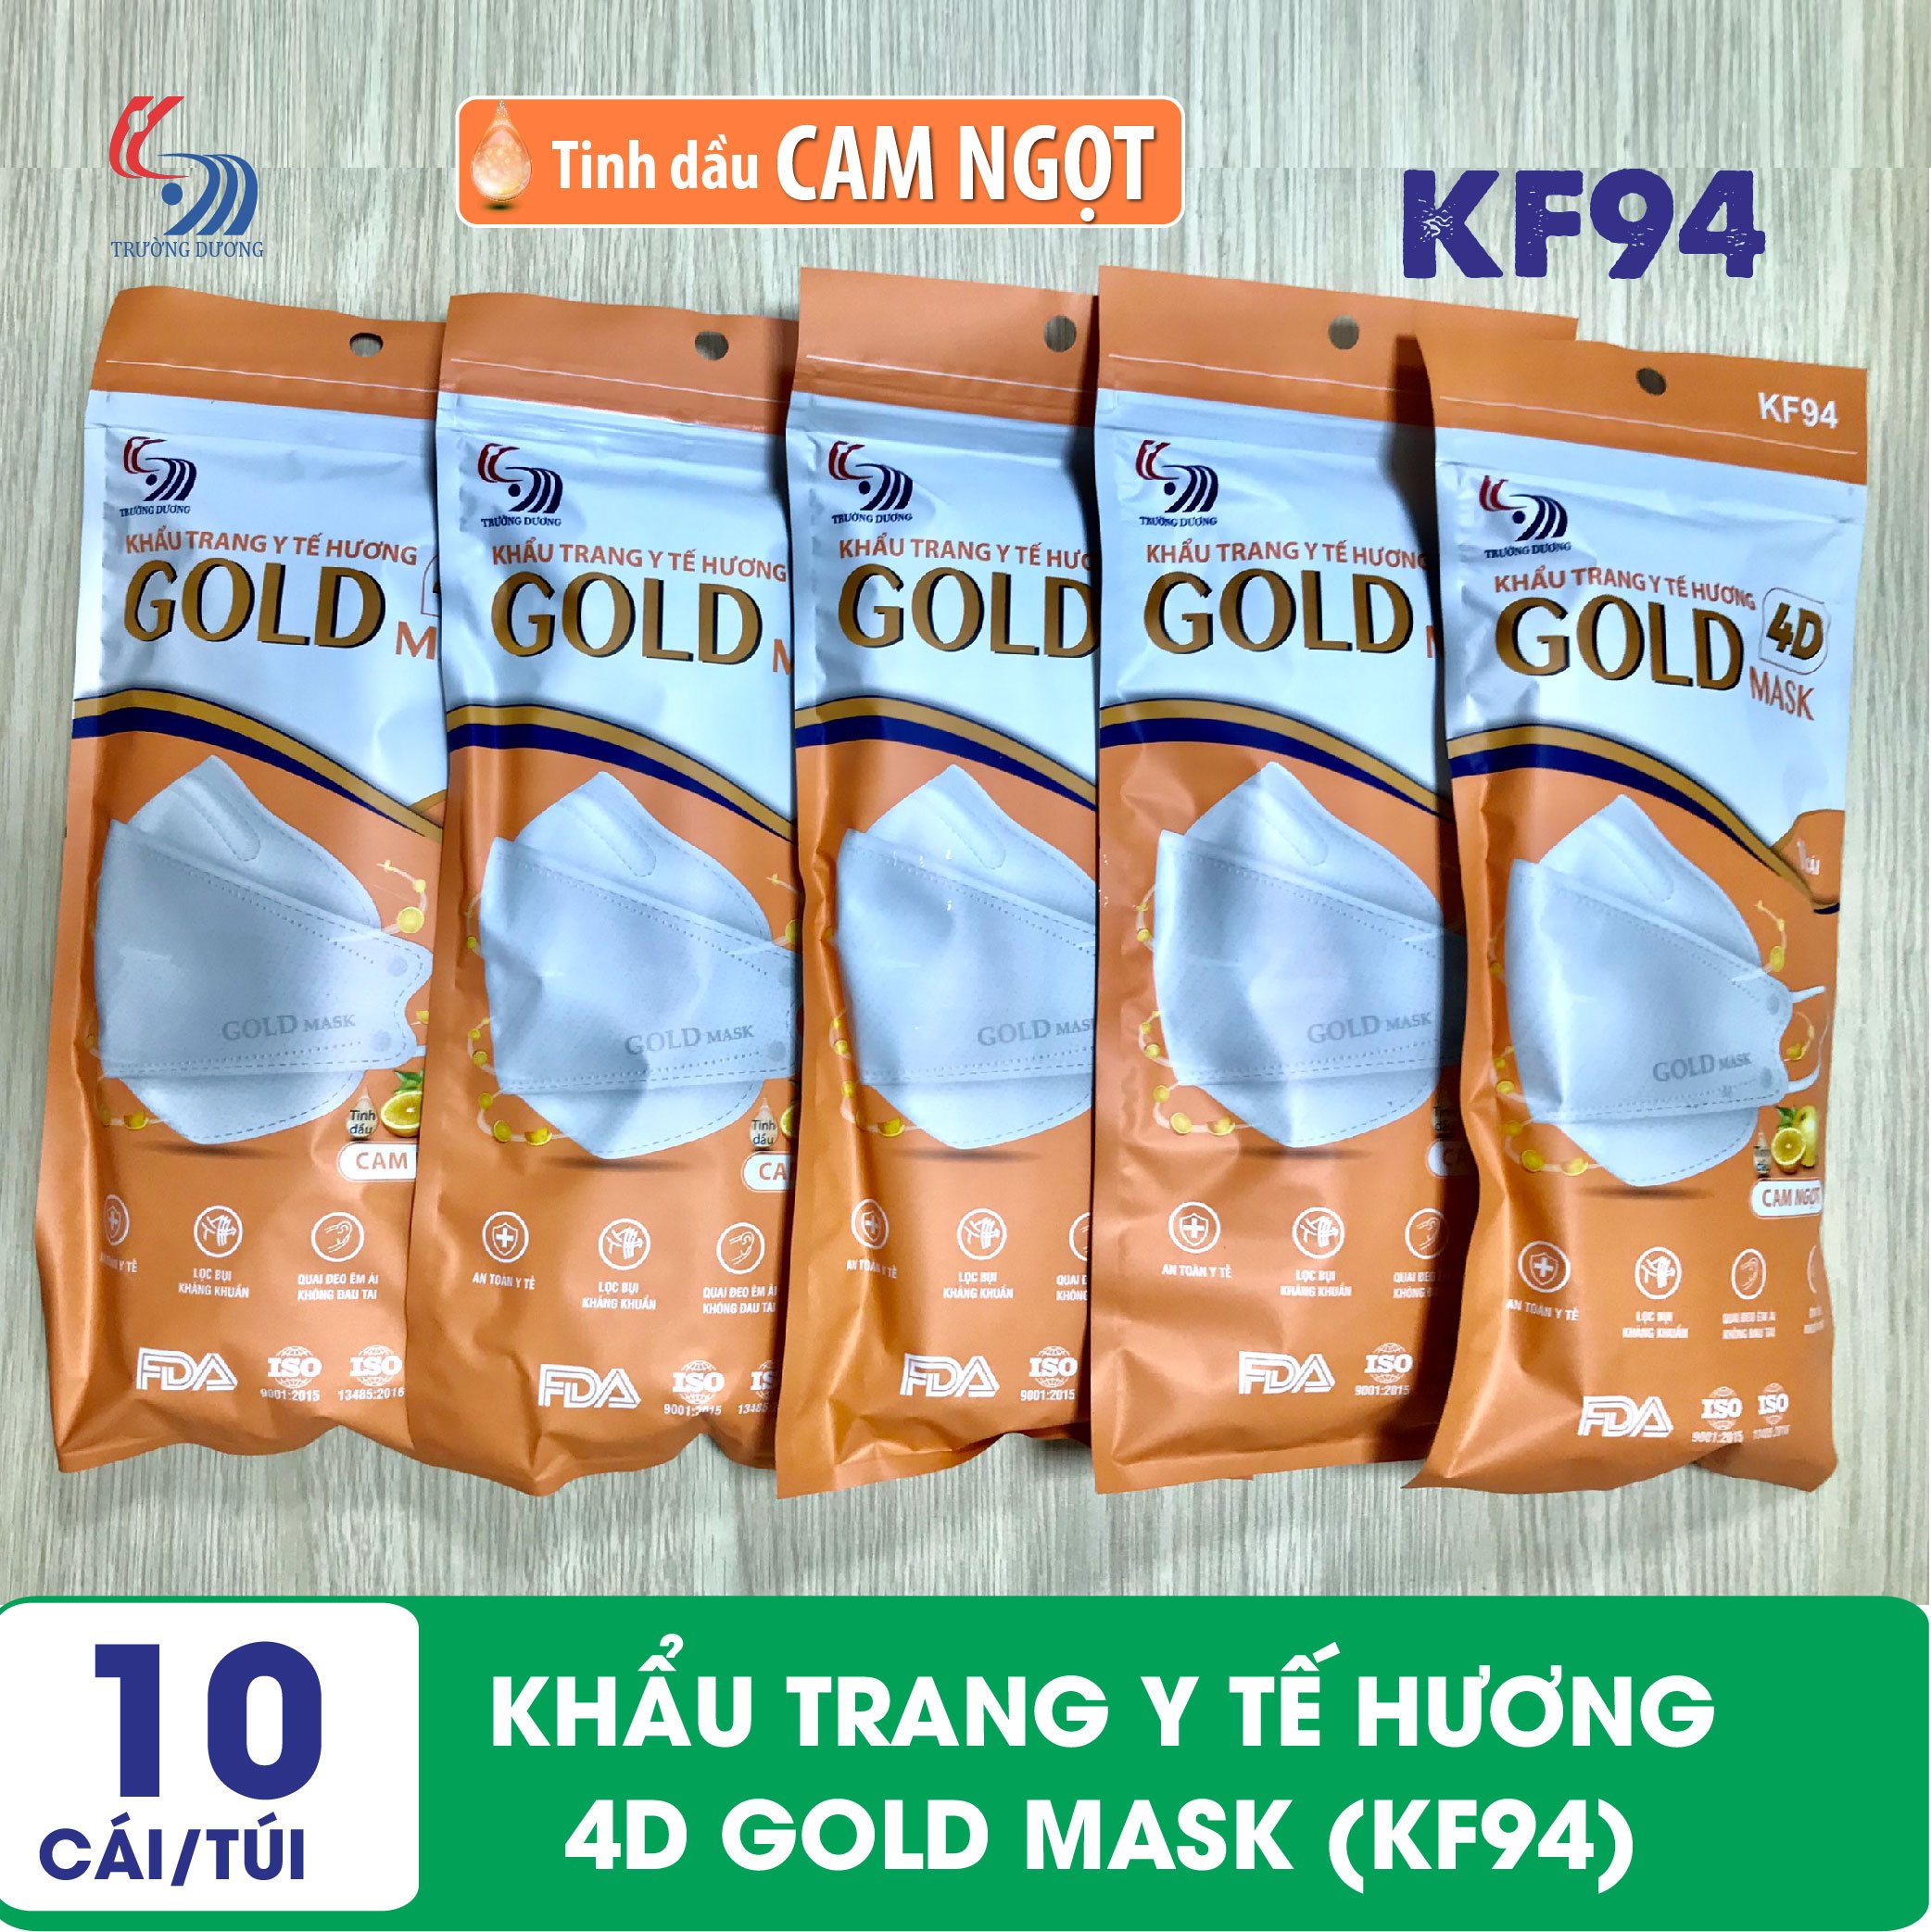 Khẩu trang y tế Hương tinh dầu Cam Ngọt 4D Gold Mask (KF94) - Túi 10 chiếc